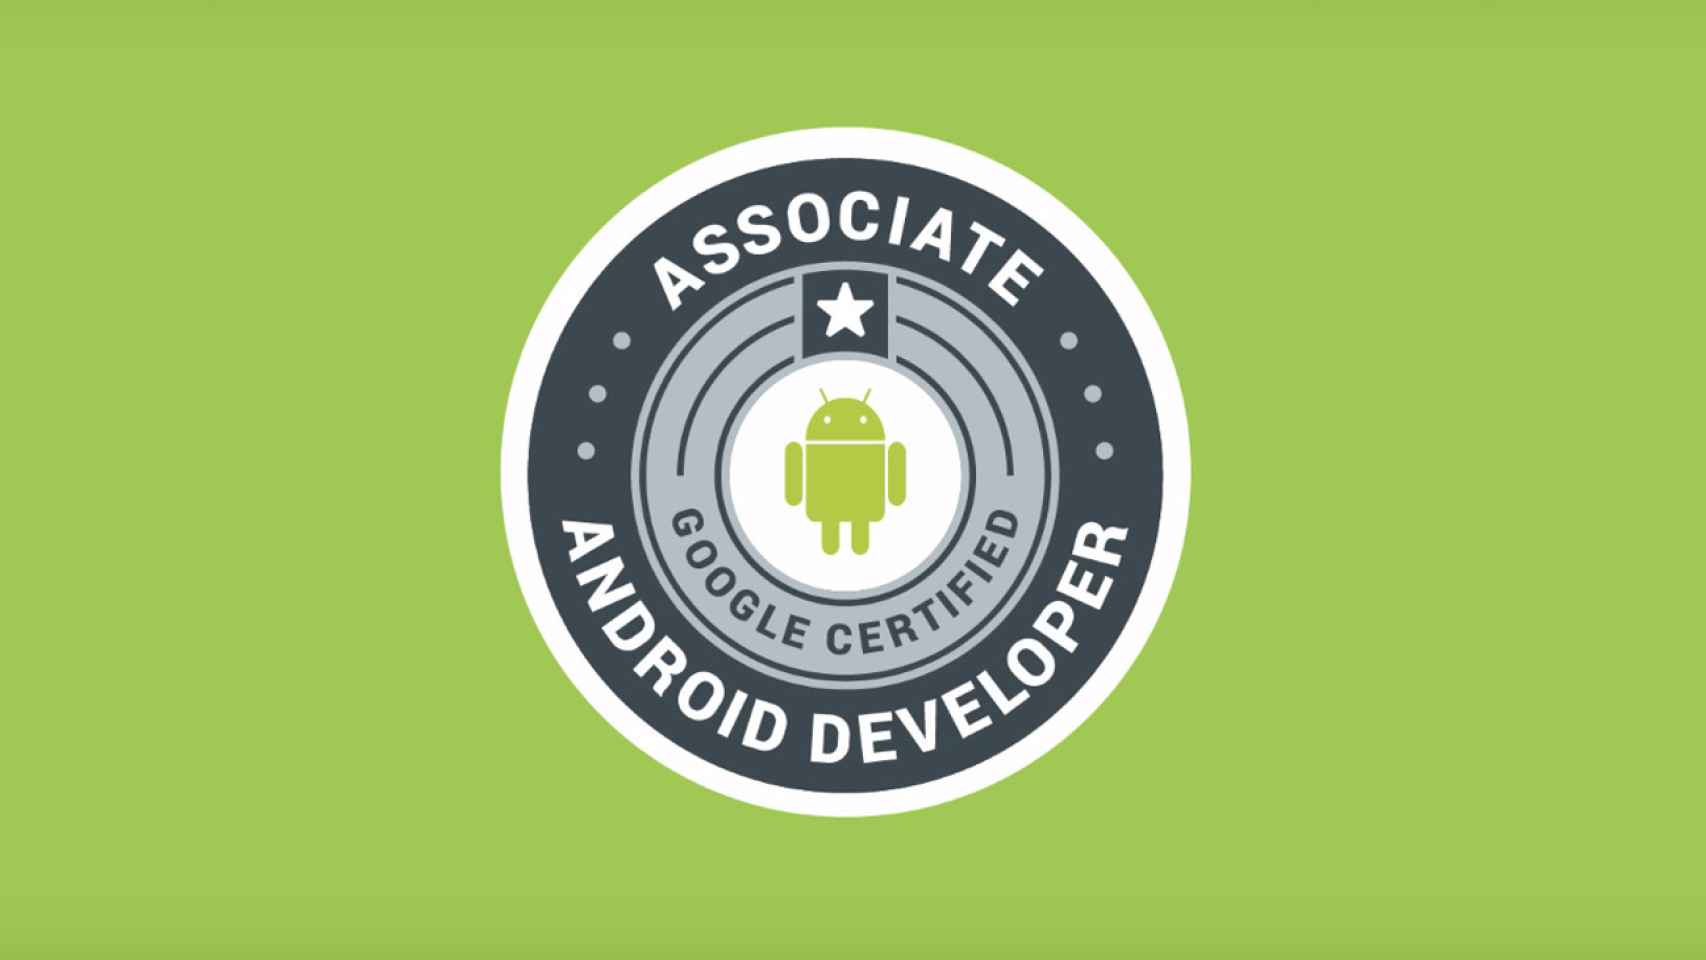 Google te anima distinguirte del resto de desarrolladores Android